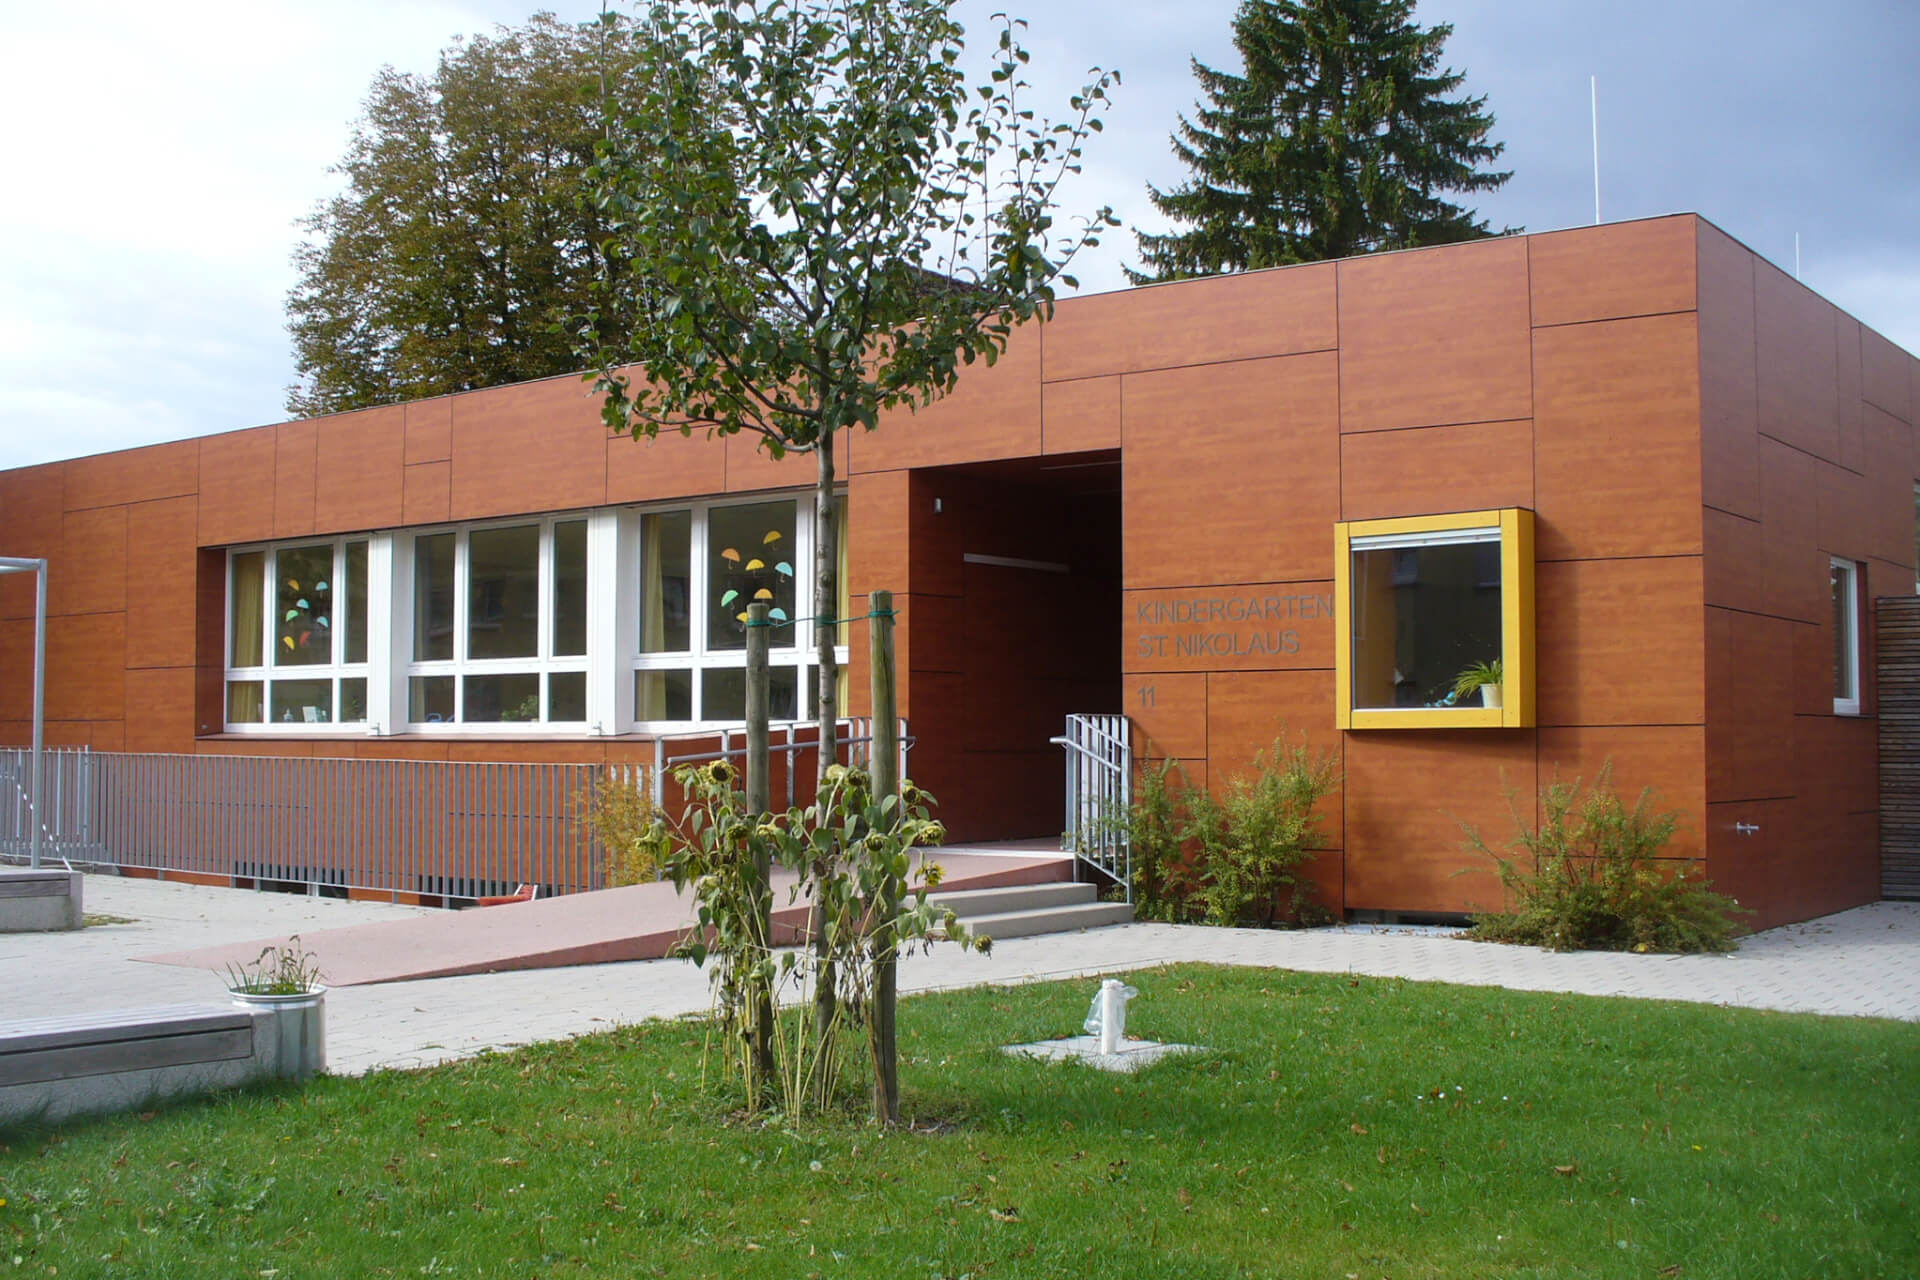 Kindertagesstätte St. Nikolaus in Memmingen